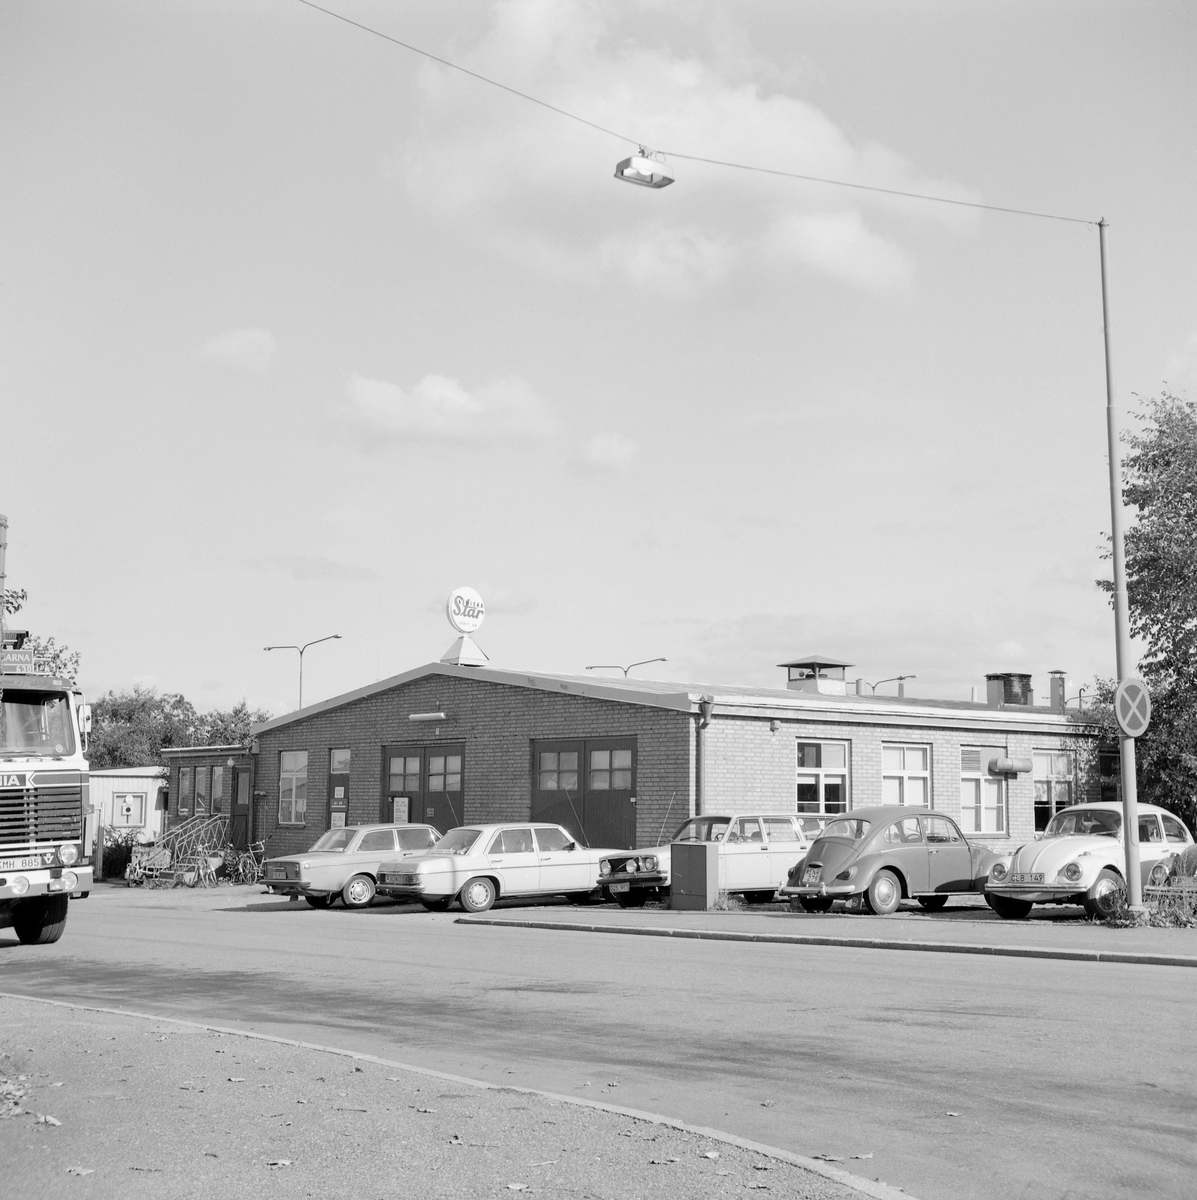 Norra området av stadsdelen Vasastaden i Linköping fick från 1900-talets mitt uteslutande bebyggelse av industriell eller affärsmässig prägel. Den hårt trafikerade Industrigatan gjorde bostadsbebyggelse mindre lämplig. Gatan tjänade därutom som del av Europaväg 4 från 1950-talets mitt till 1977. Bilden visar miljön vid den parallella Slöjdgatan.